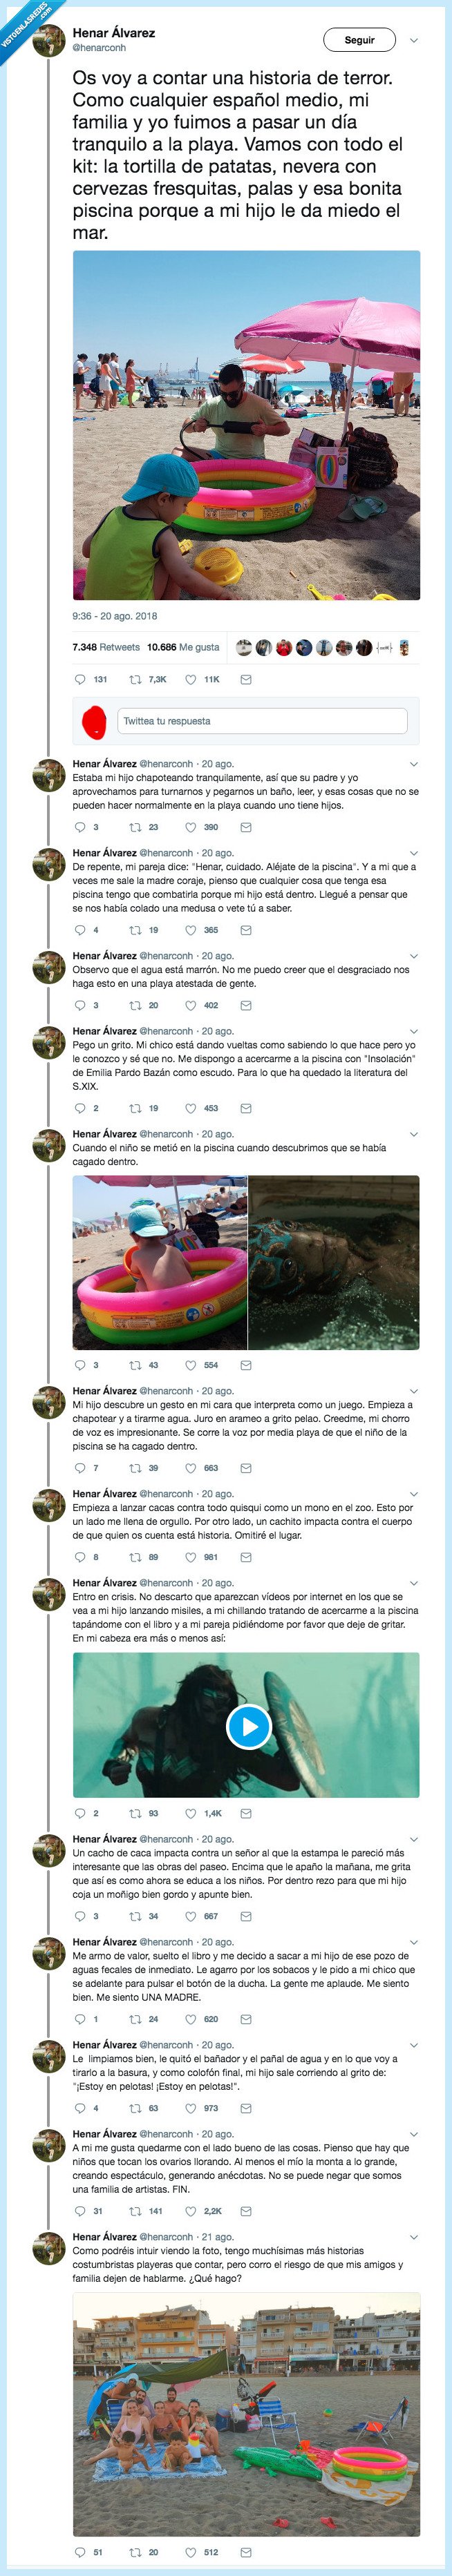 494946 - Su hijo le declara la guerra en la playa: se caga en la piscina y empieza a lanzar cacas a todo quisqui, por @henarconh